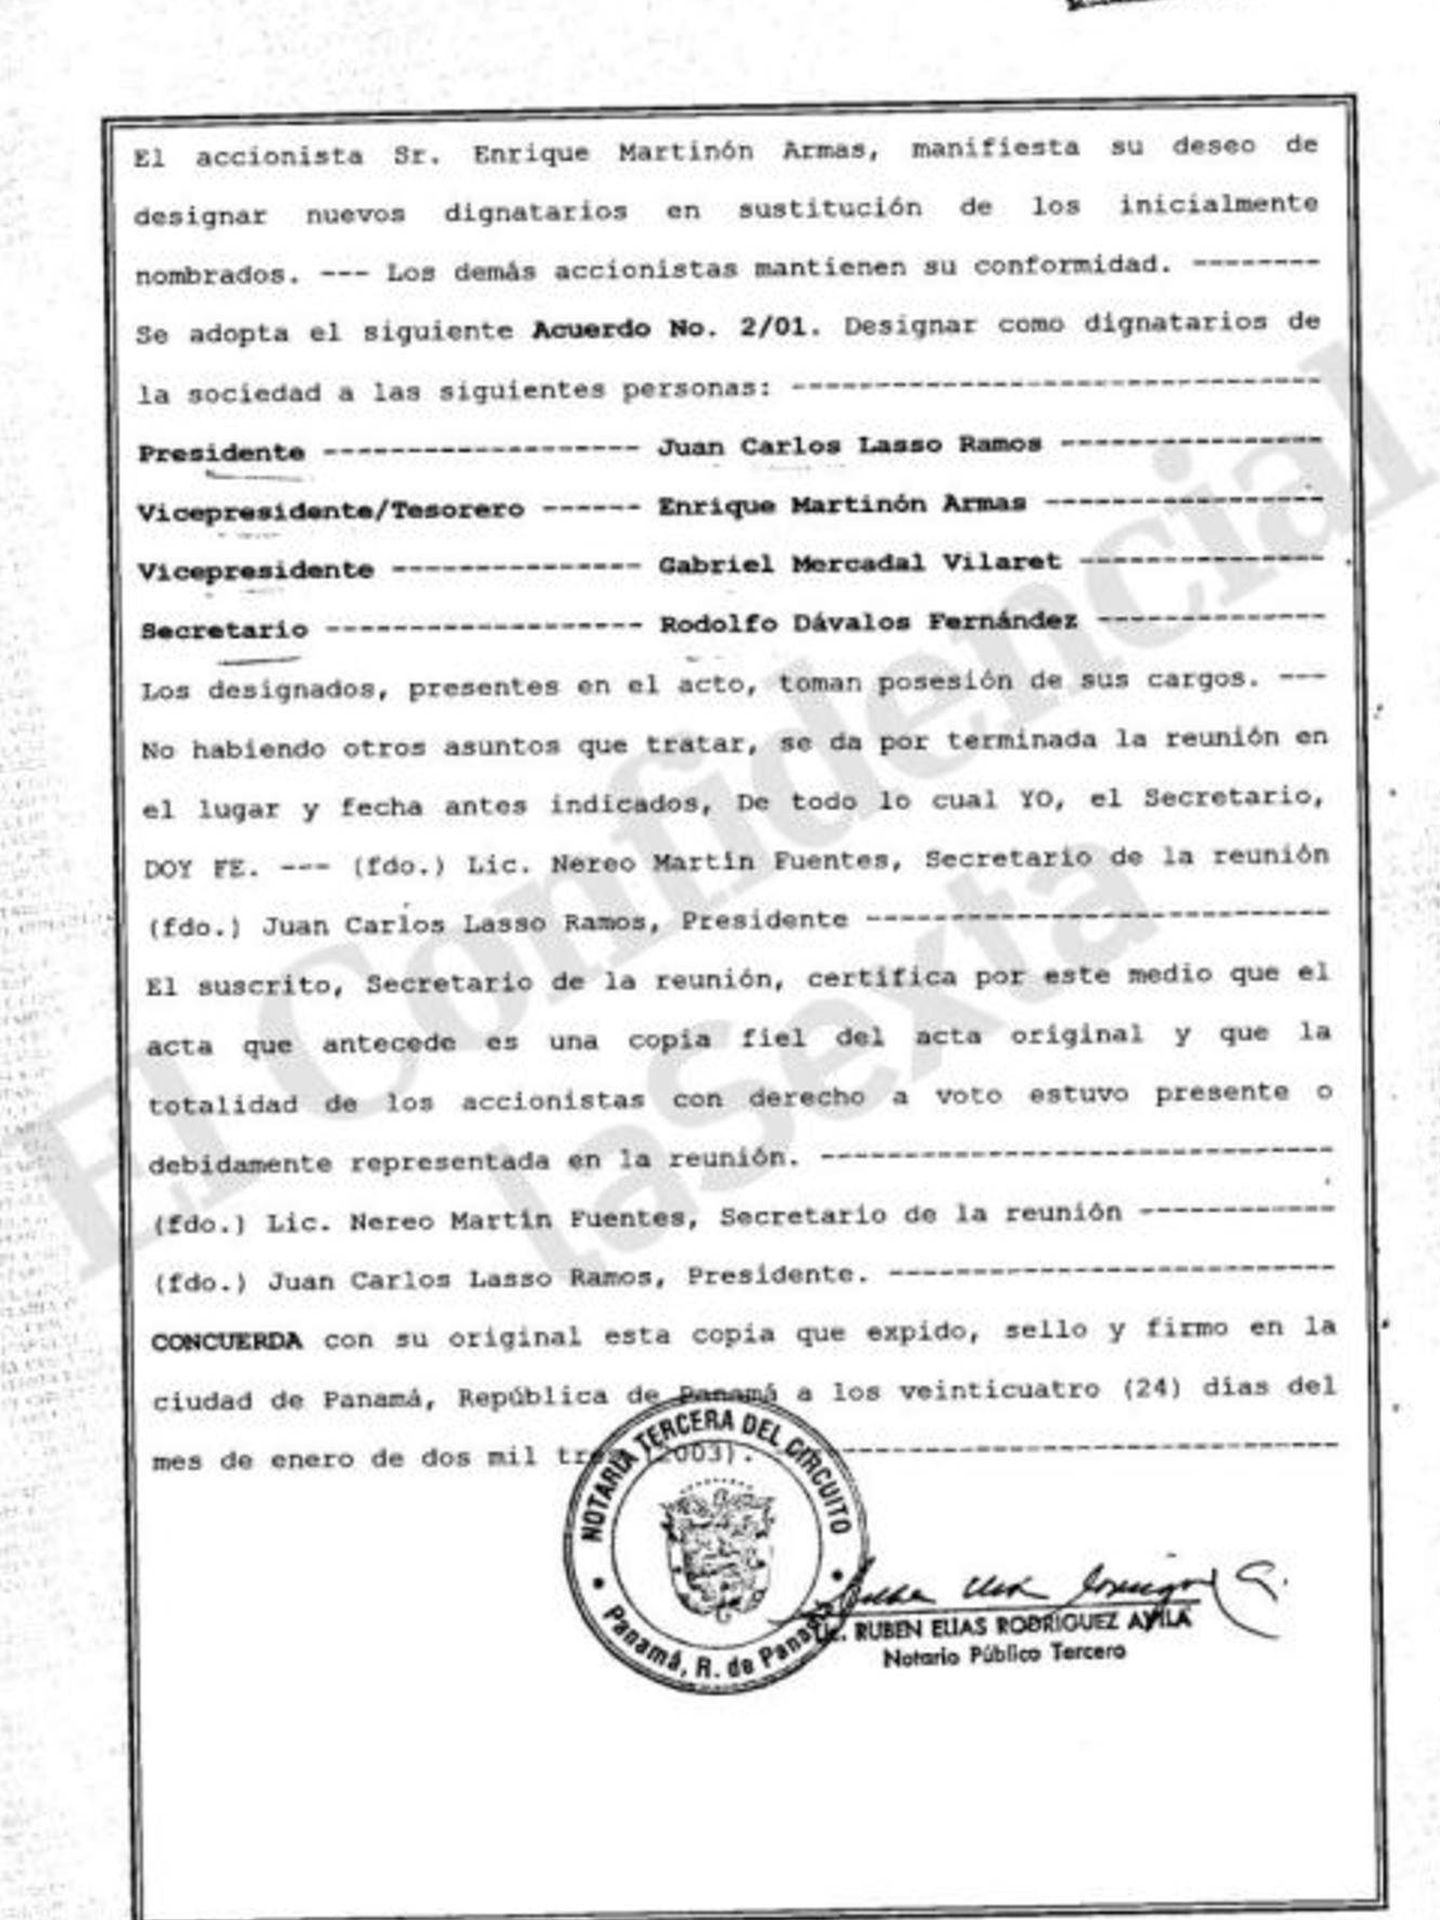 Documentación de los papeles de Panamá sobre Martinón. (Pinche para ampliar)